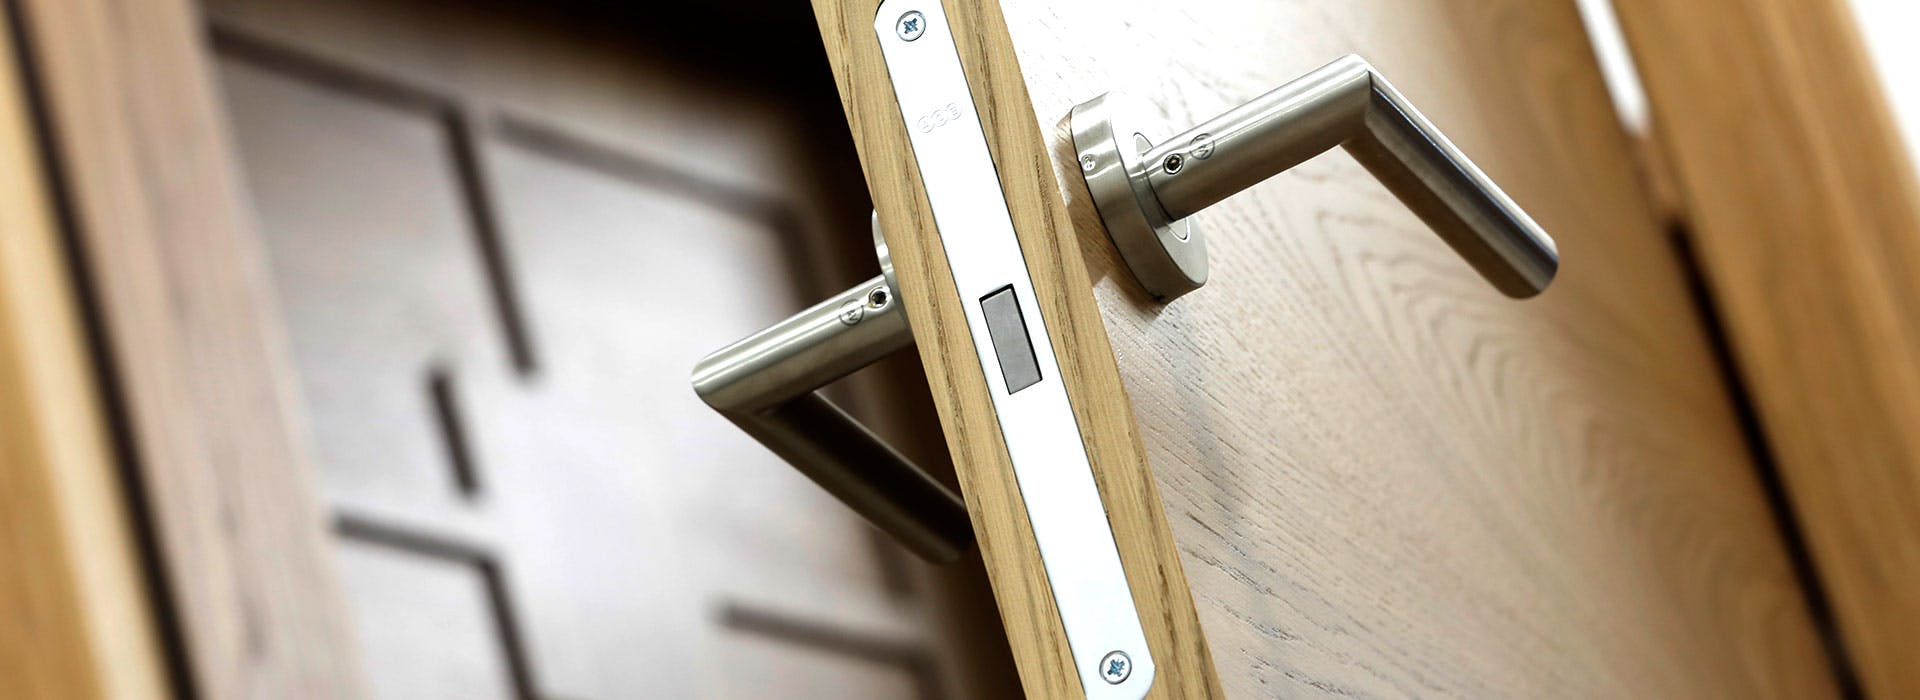 A close up of an internal Deuren door with handle